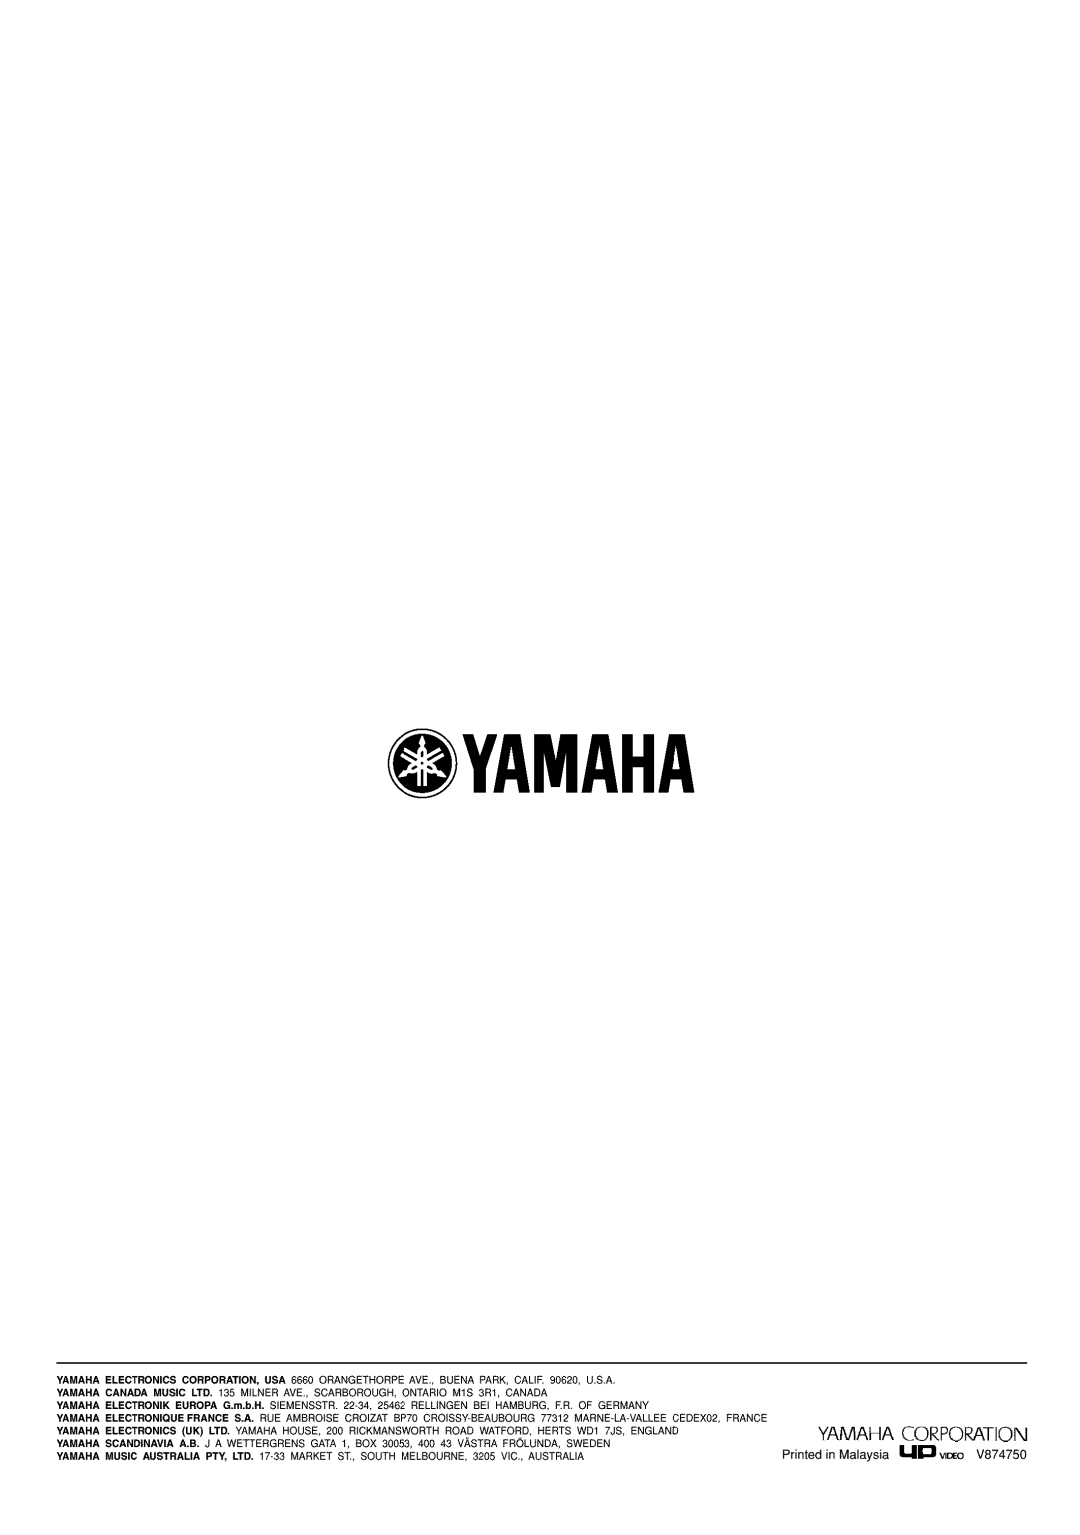 Yamaha RX-V730 owner manual Oyamaha, Yamaha Corporation 